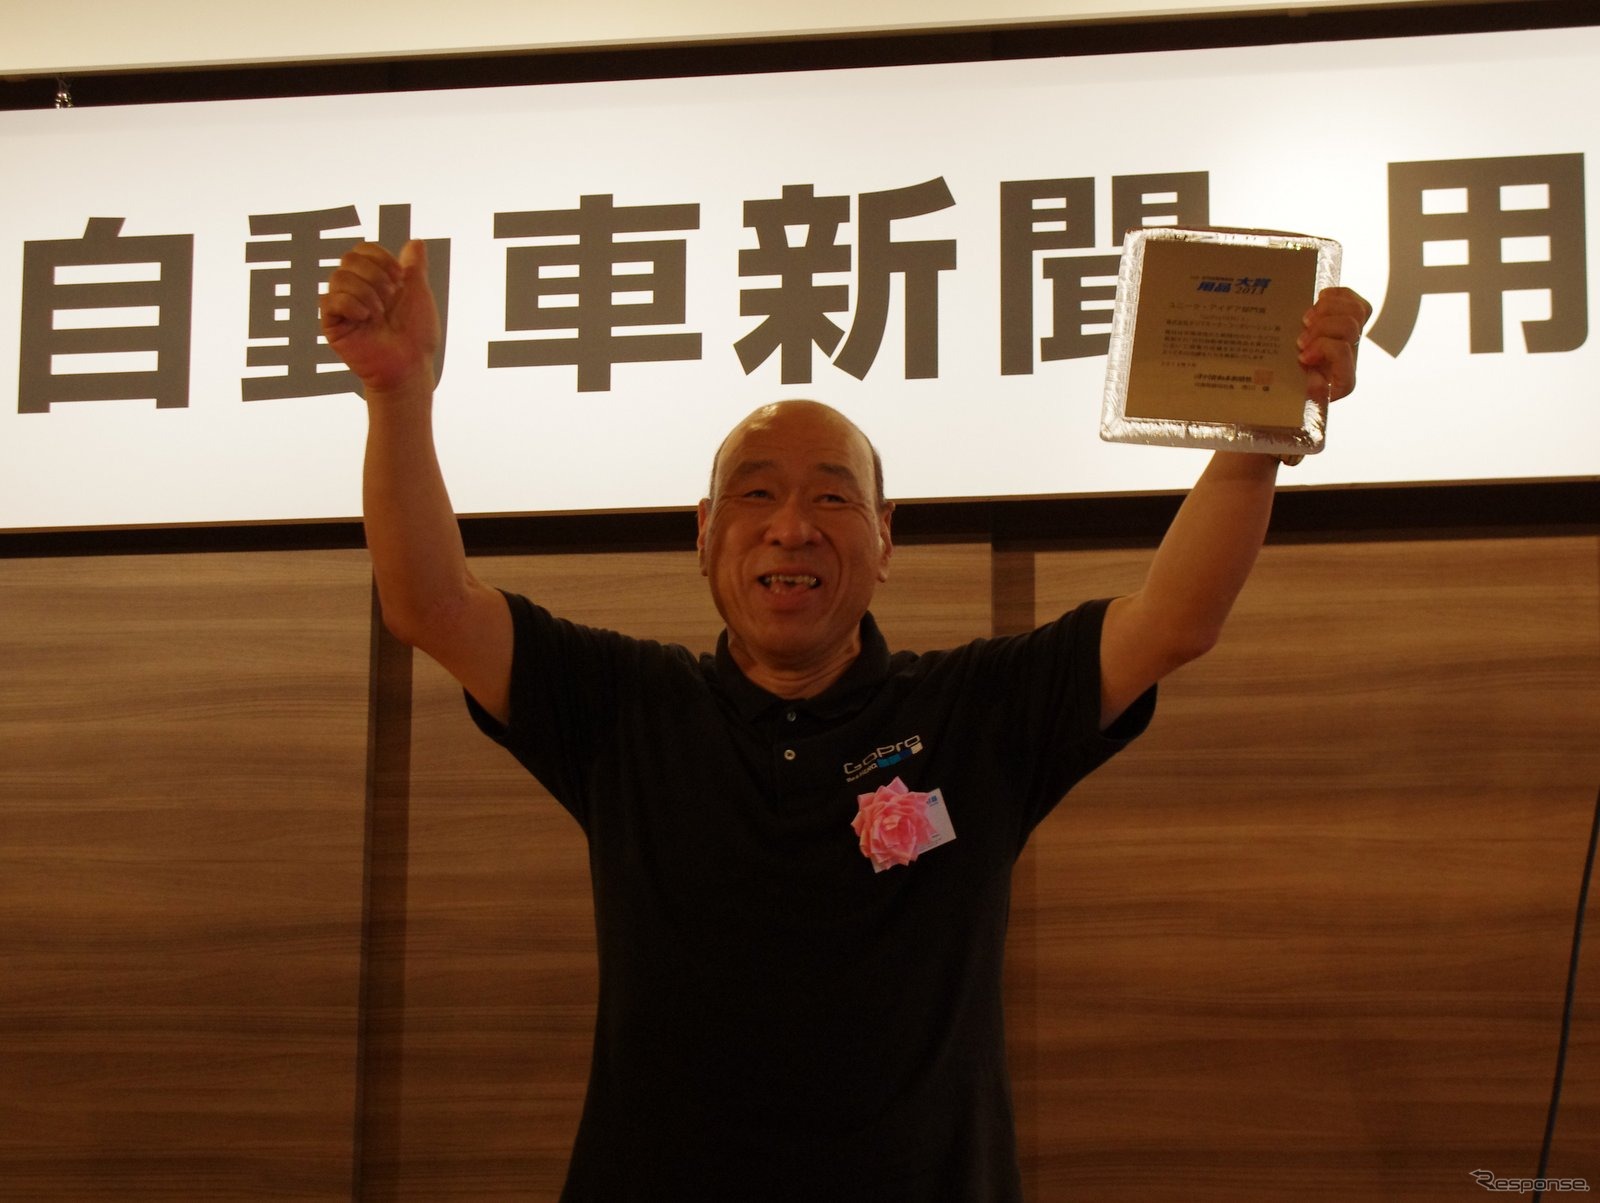 モンスター田嶋もタジマモーターコーポレーション「GoPro HERO3」でユニーク・アイデア部門賞を受賞